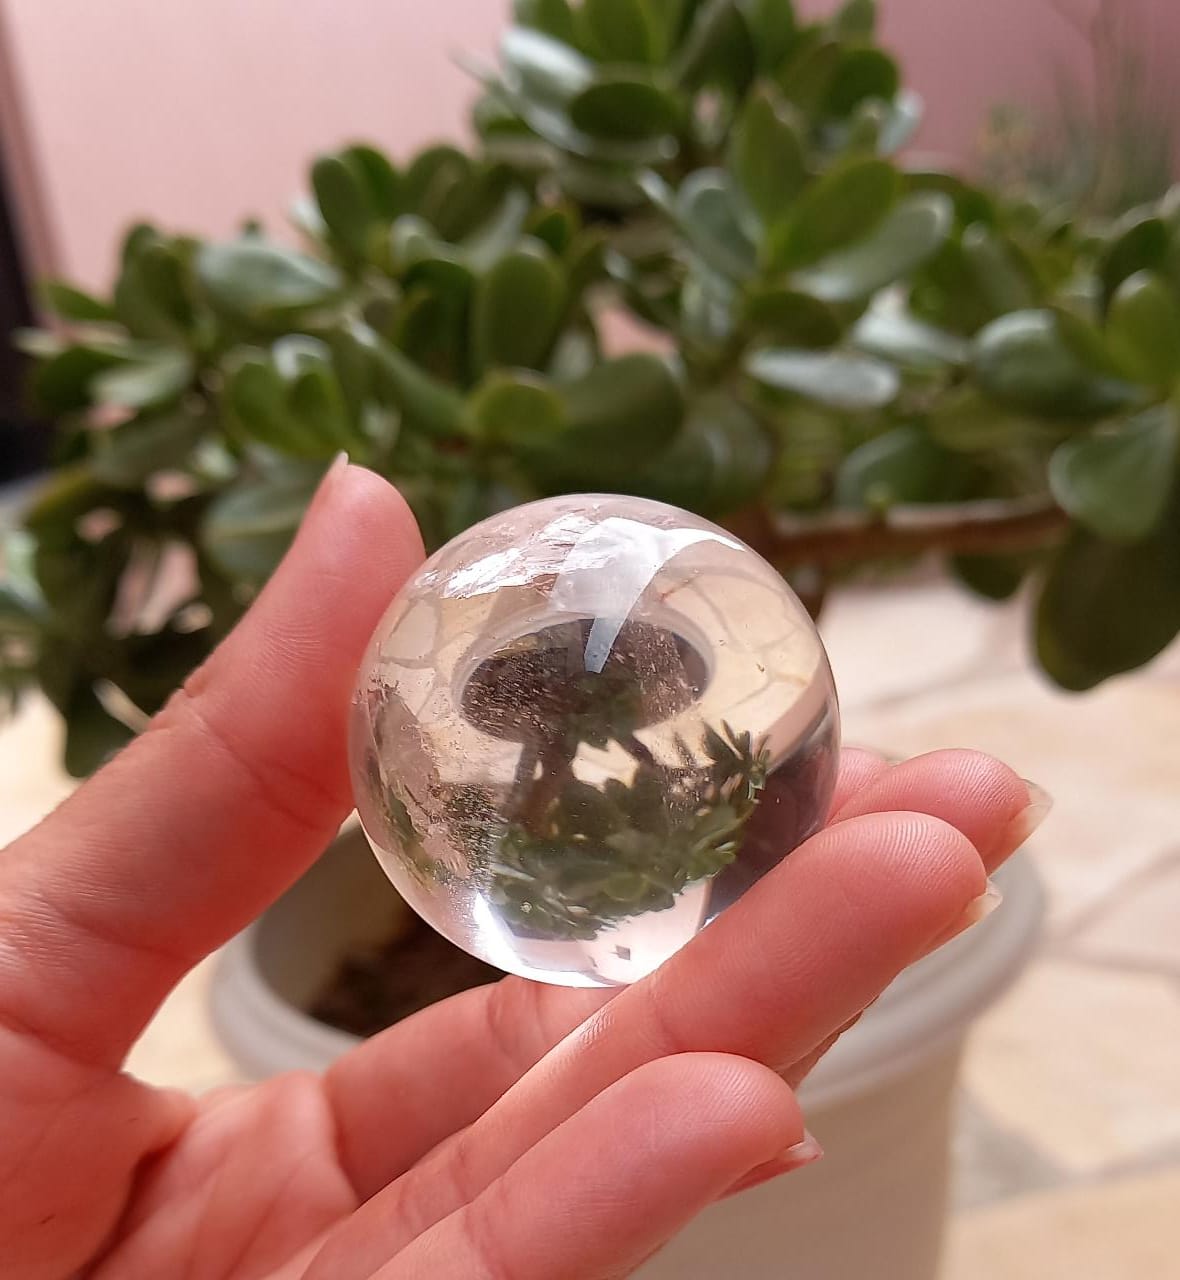 Bola de Cristal com Mostarda - Extremamente Desagradável - Renascença V+